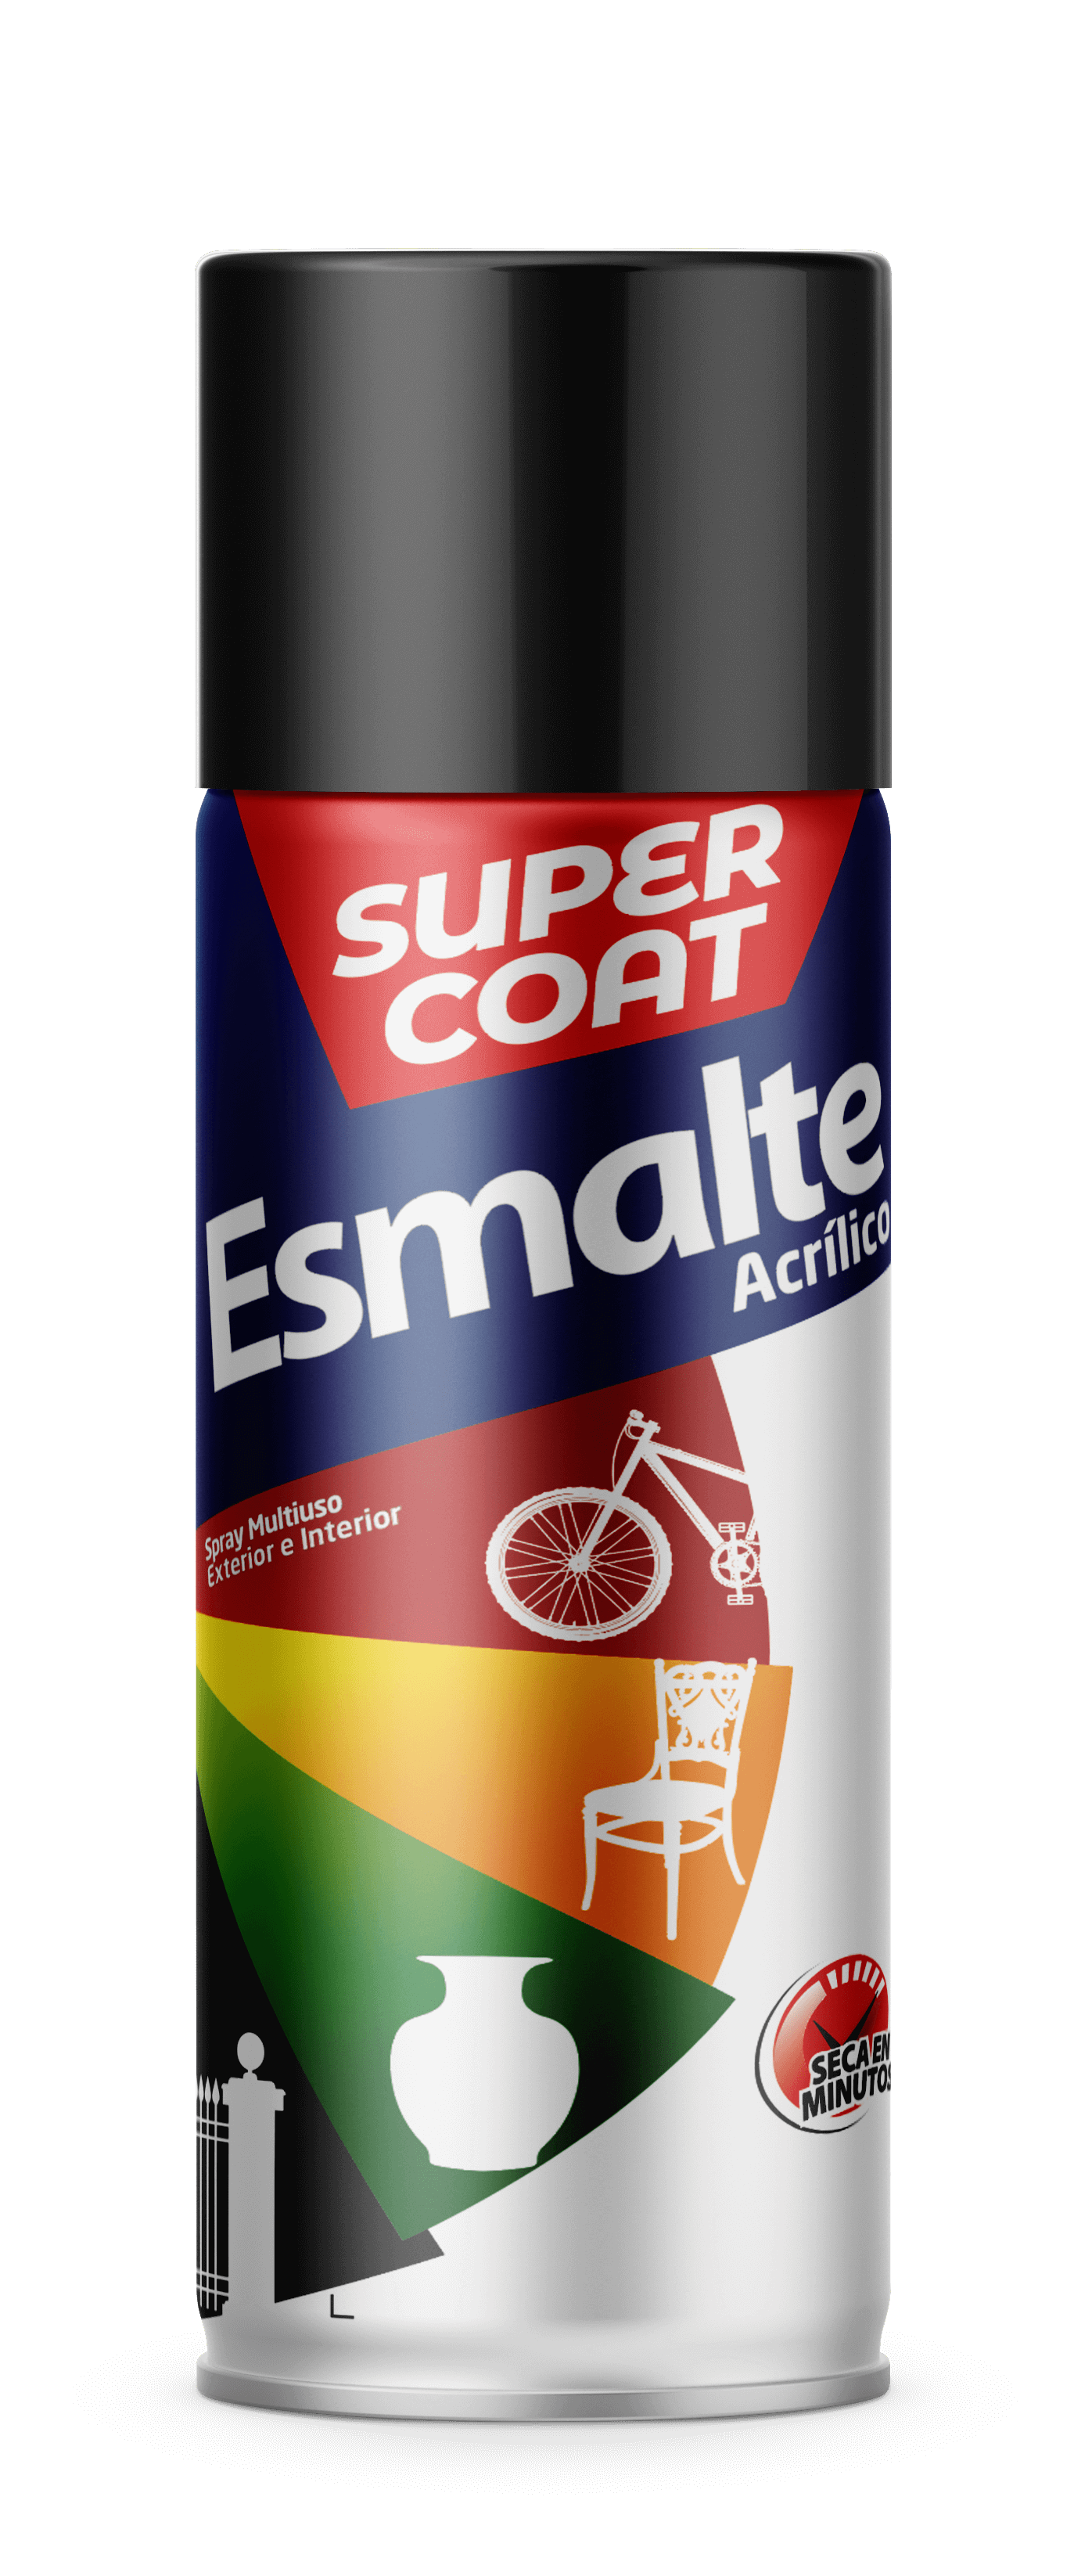 Super coat mate